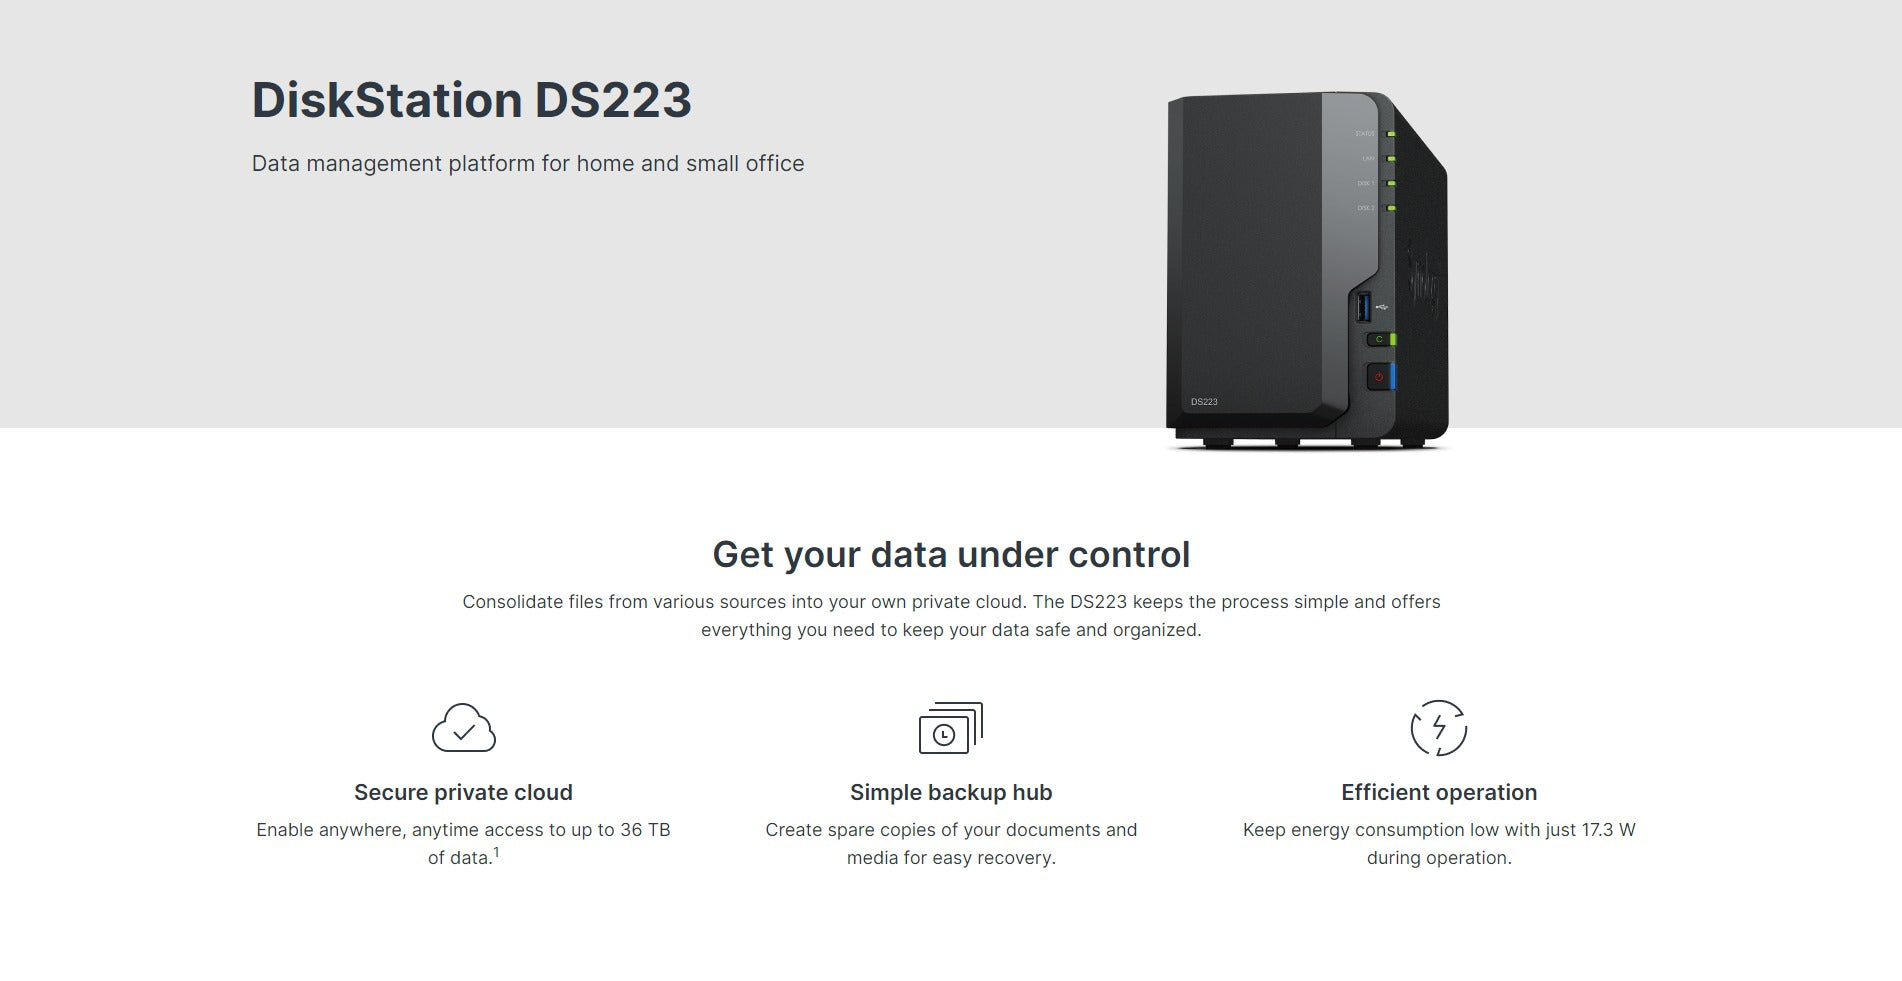 DiskStation DS223